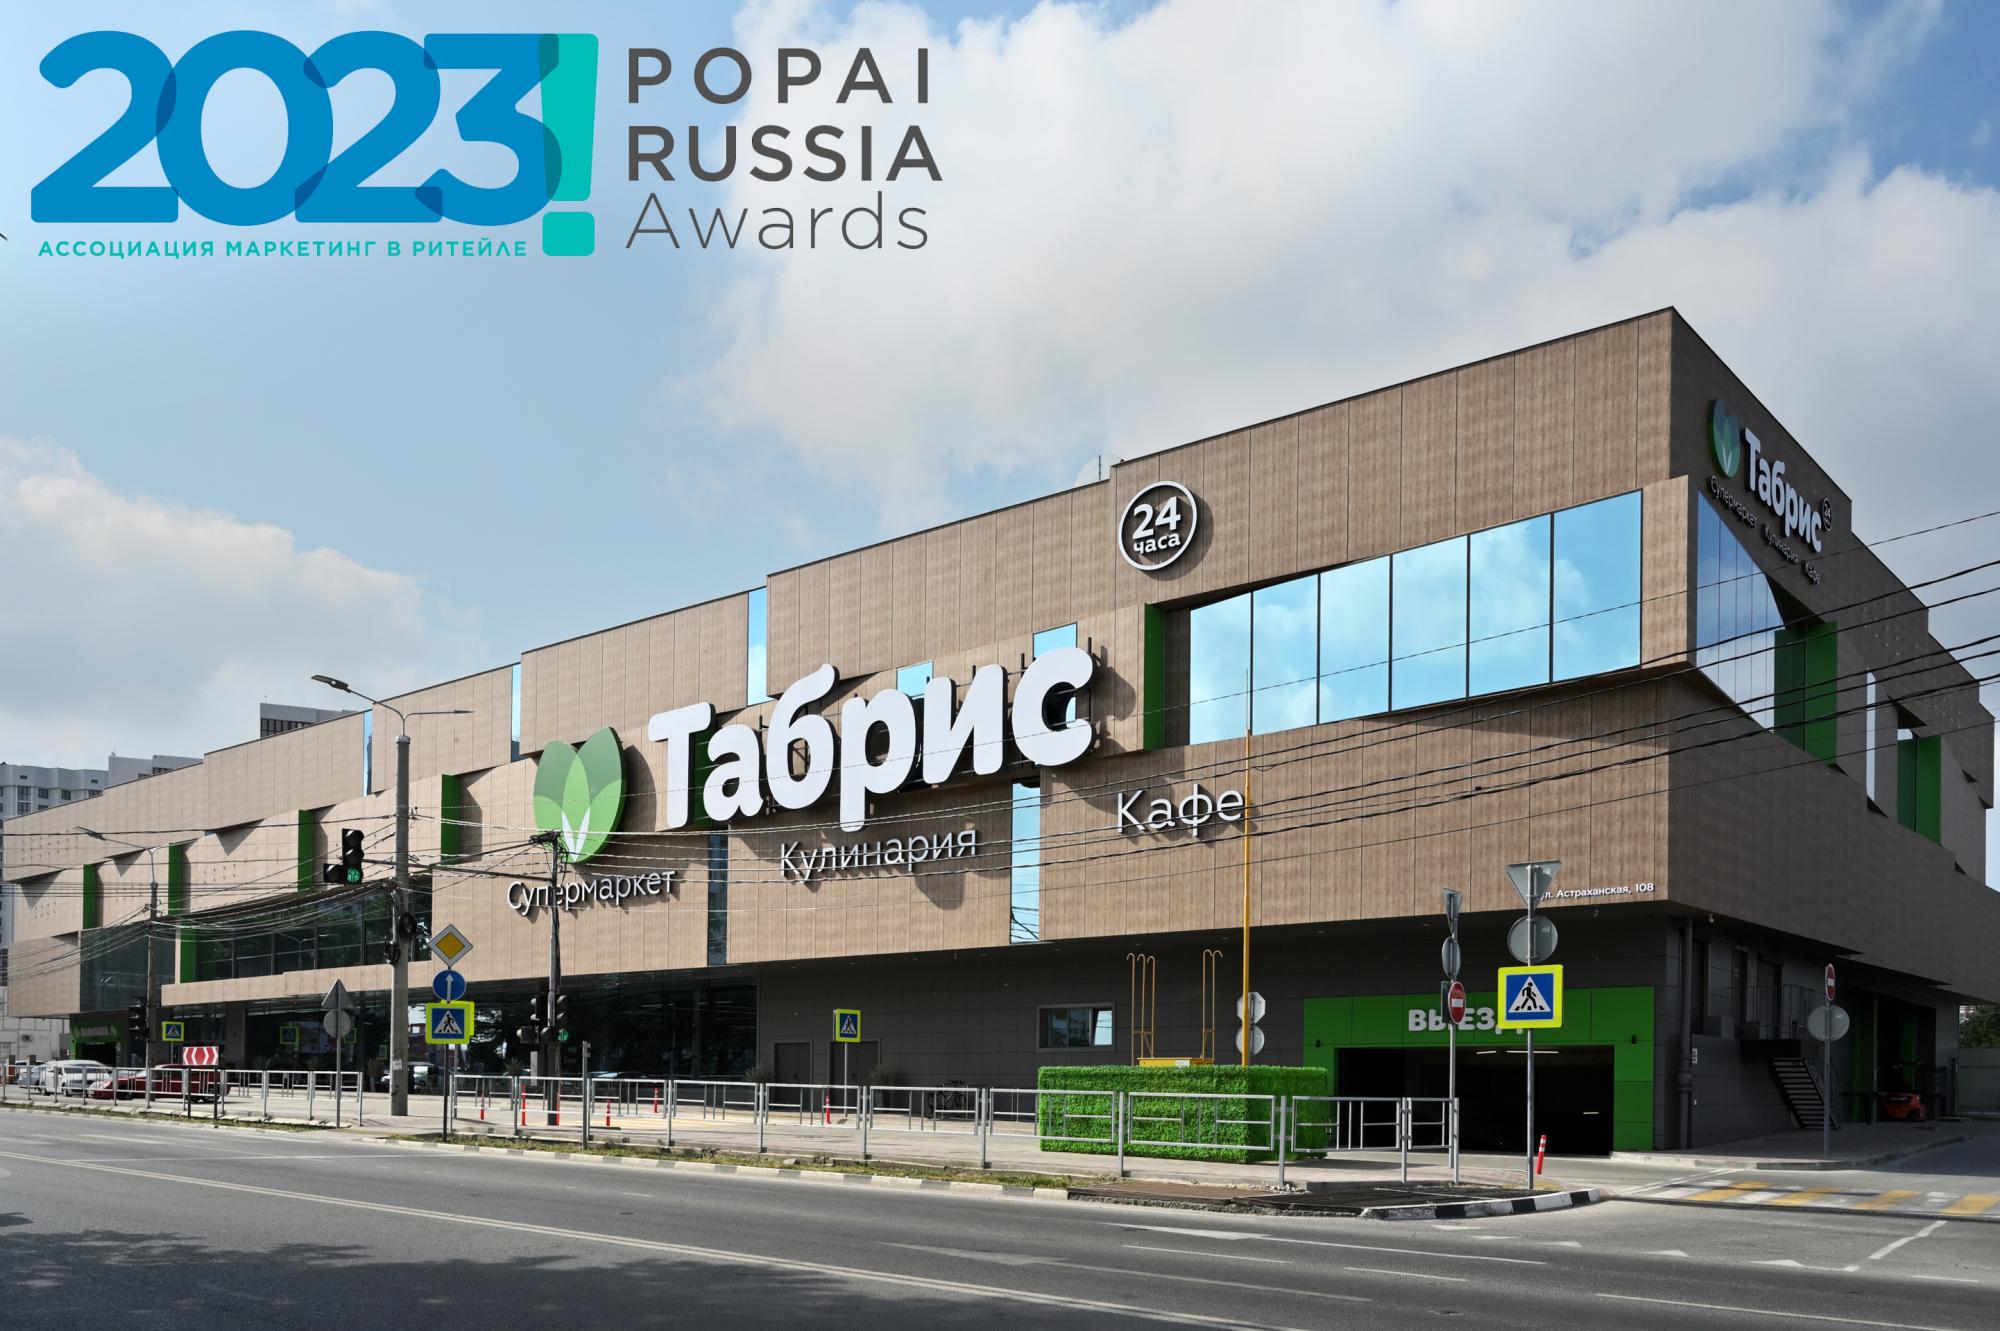 Наш проект — Торговый центр "Табрис" — победитель в конкурсе POPAI AWARDS. 